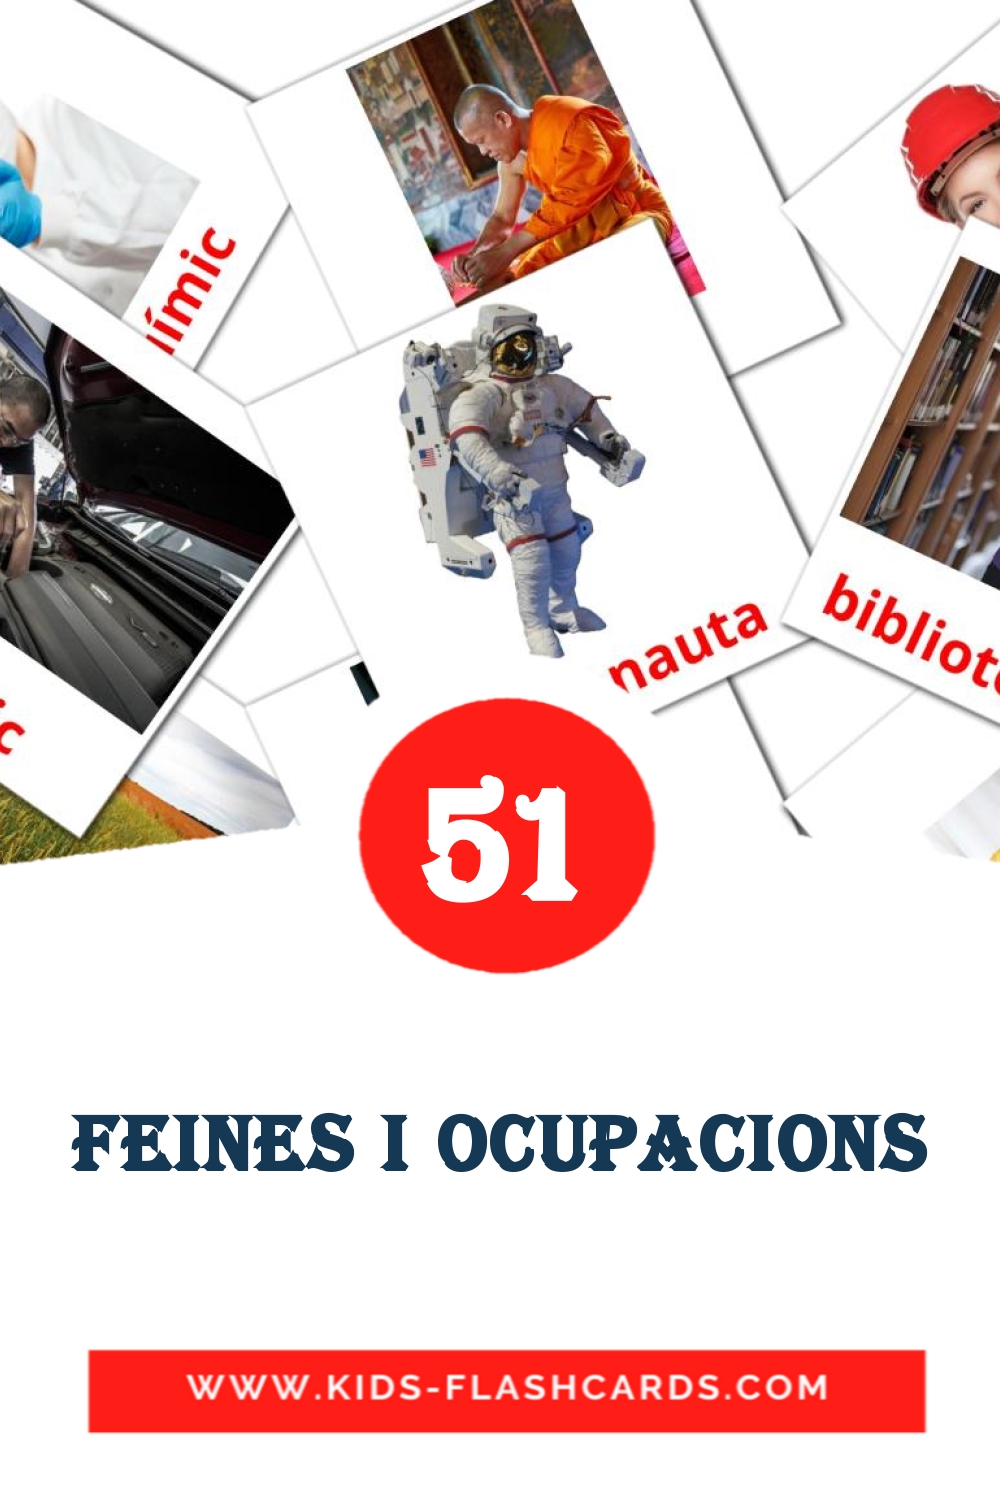 51 tarjetas didacticas de Feines i Ocupacions para el jardín de infancia en catalán